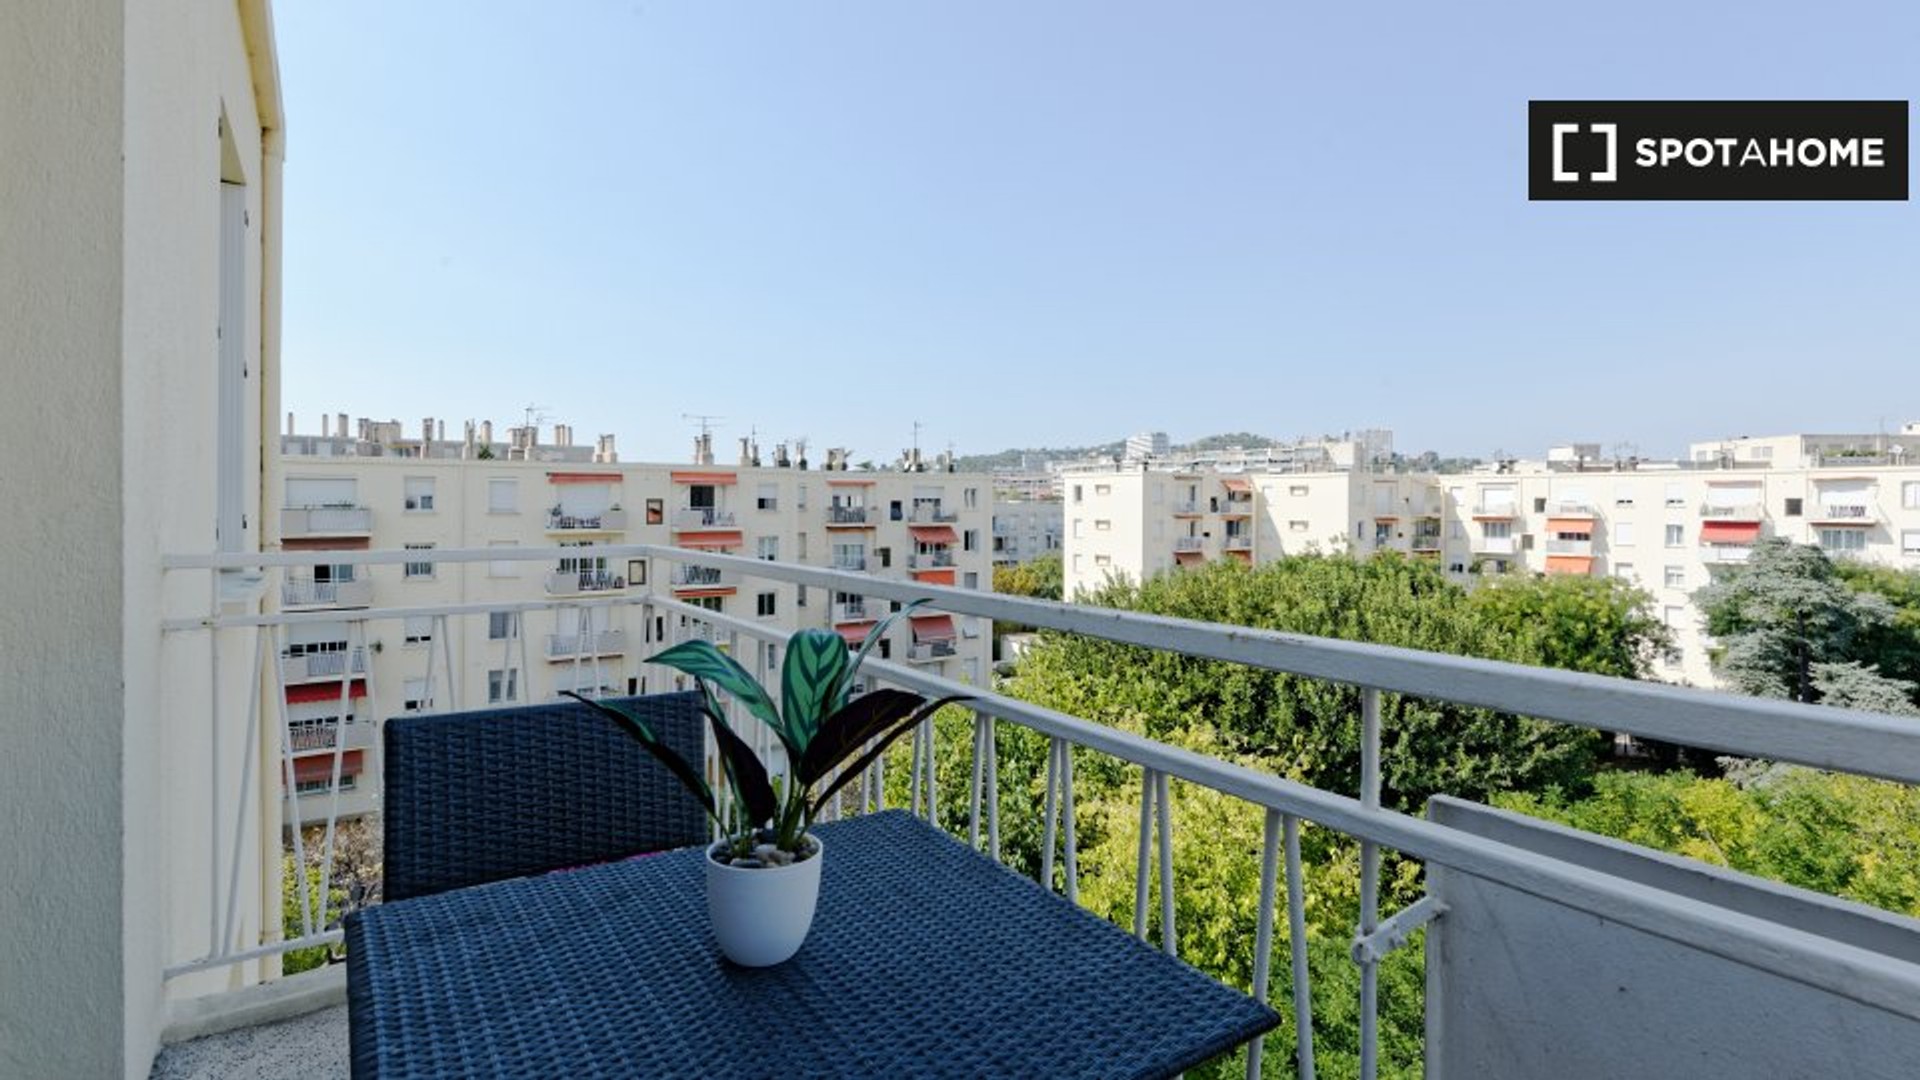 Alojamento com 3 quartos em Marselha